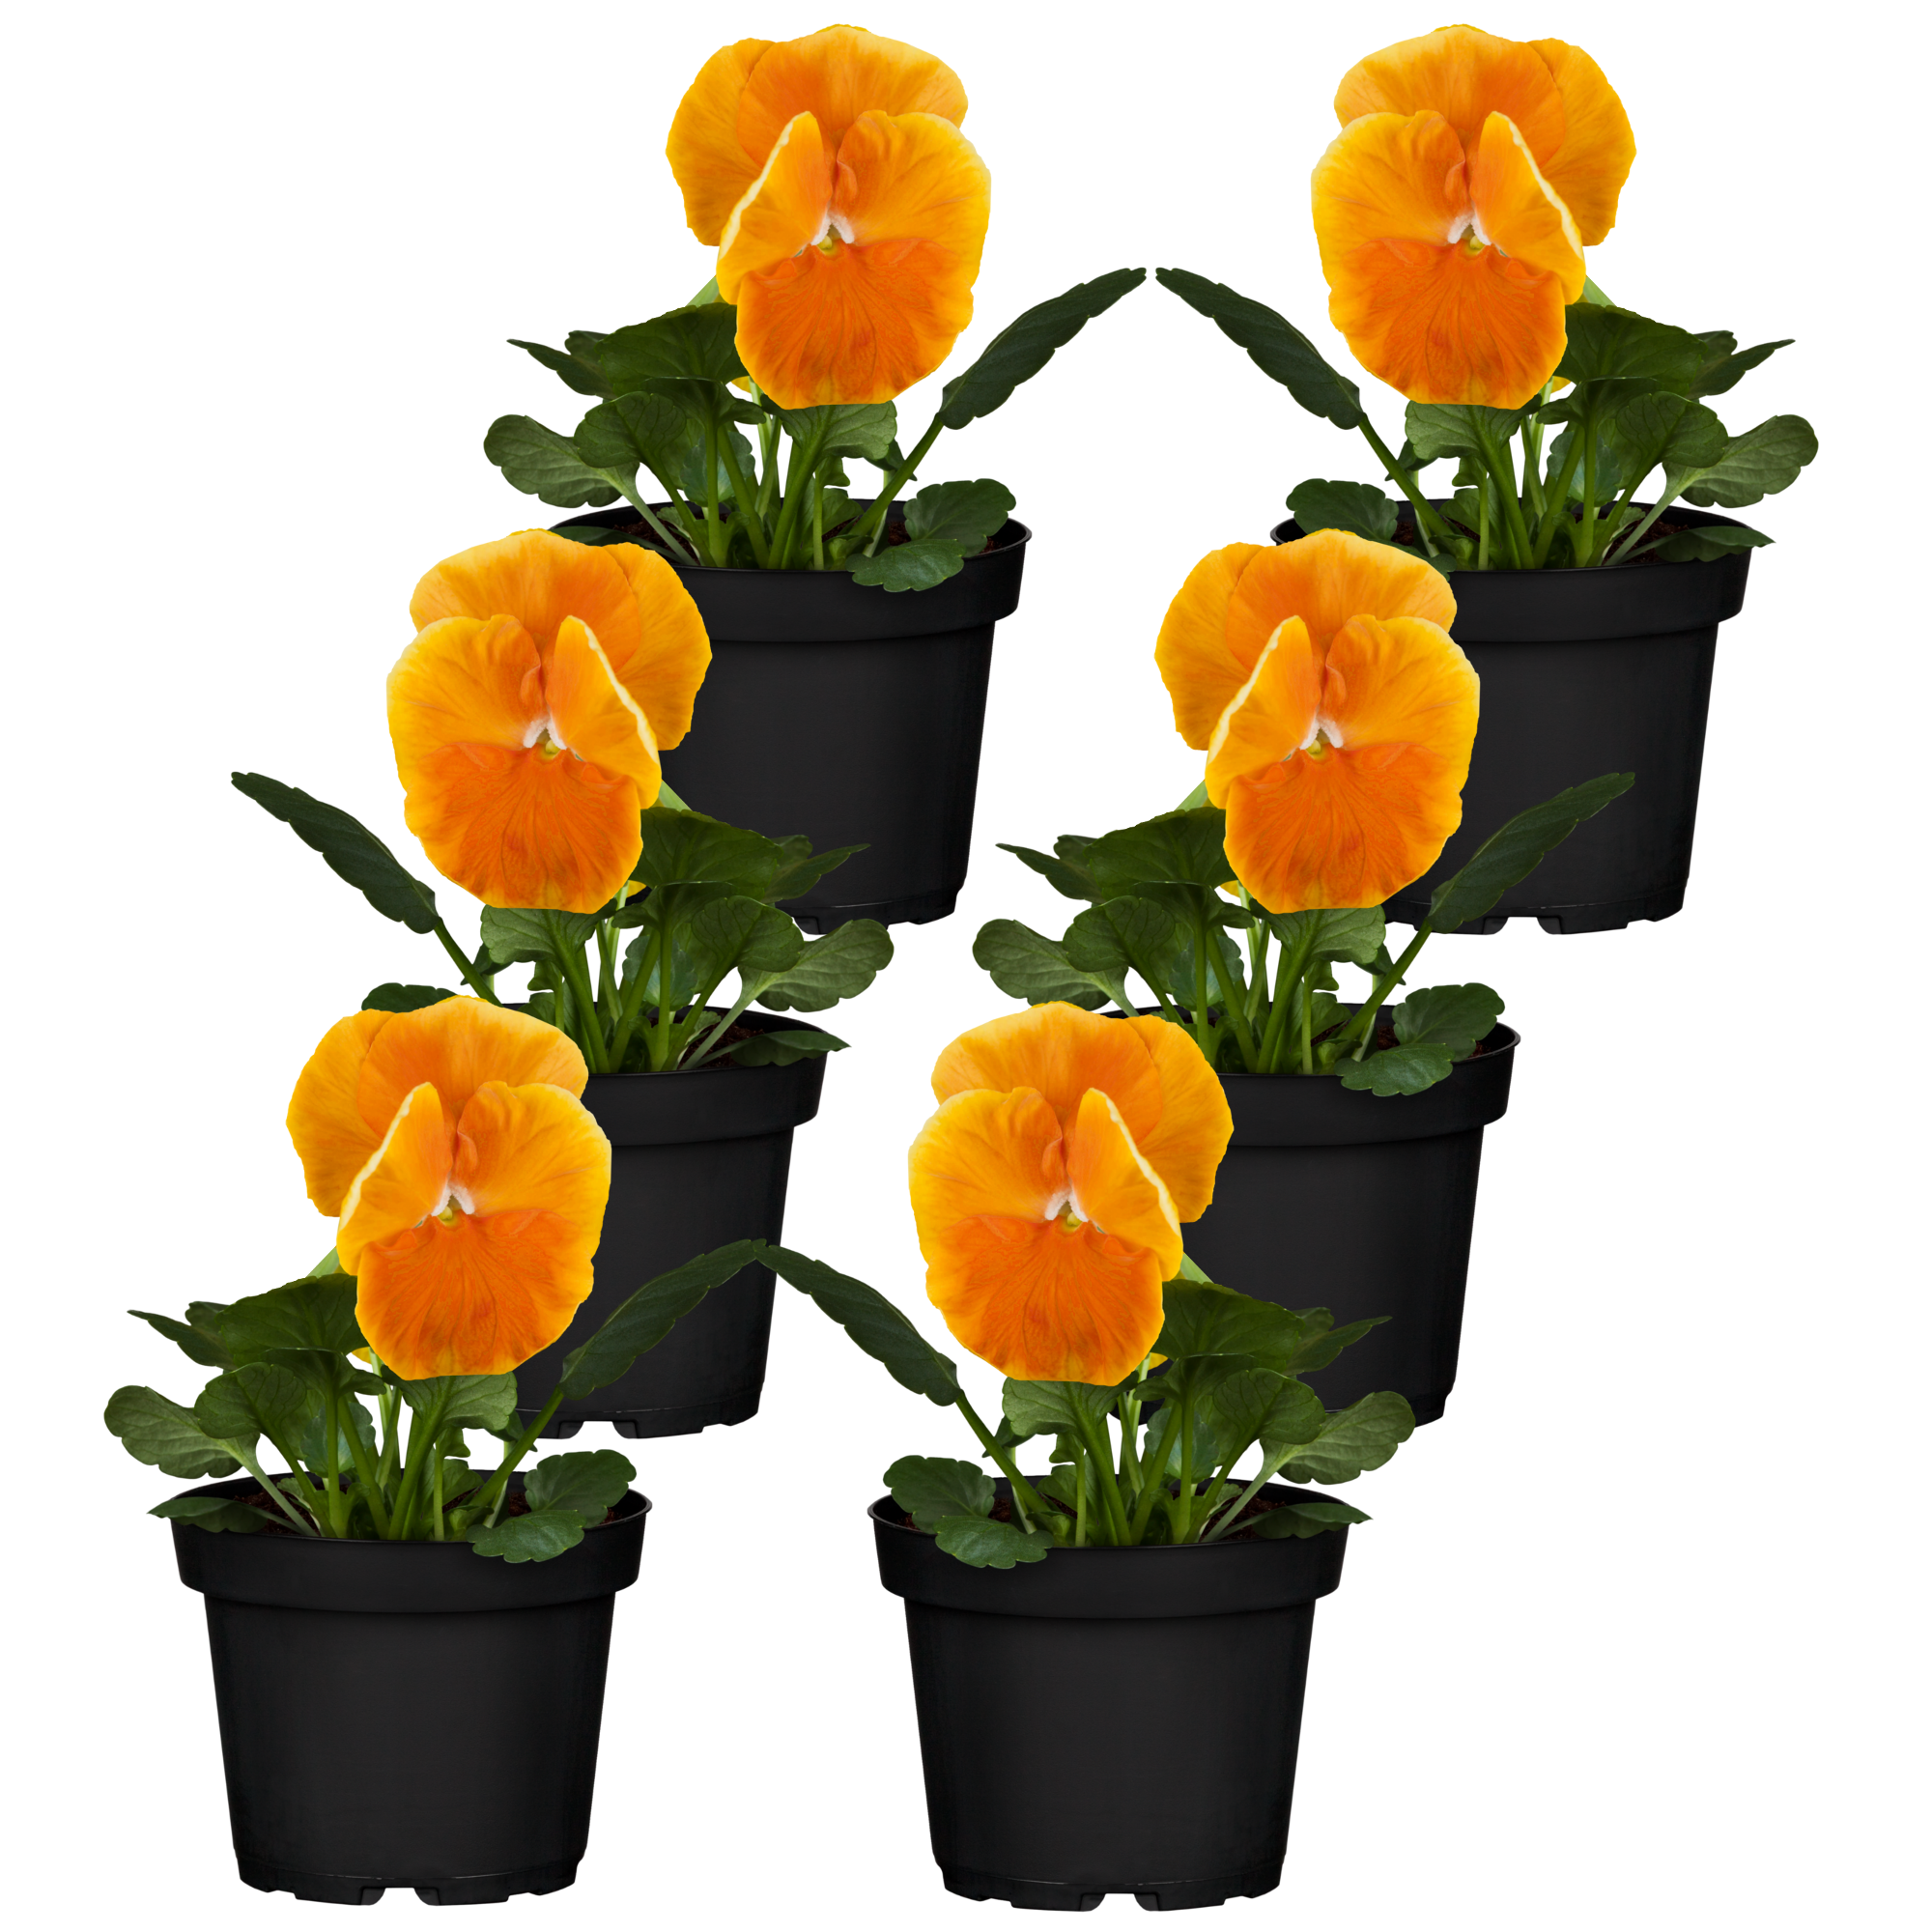 Stiefmütterchen orange 9 cm Topf, 6er-Set + product picture